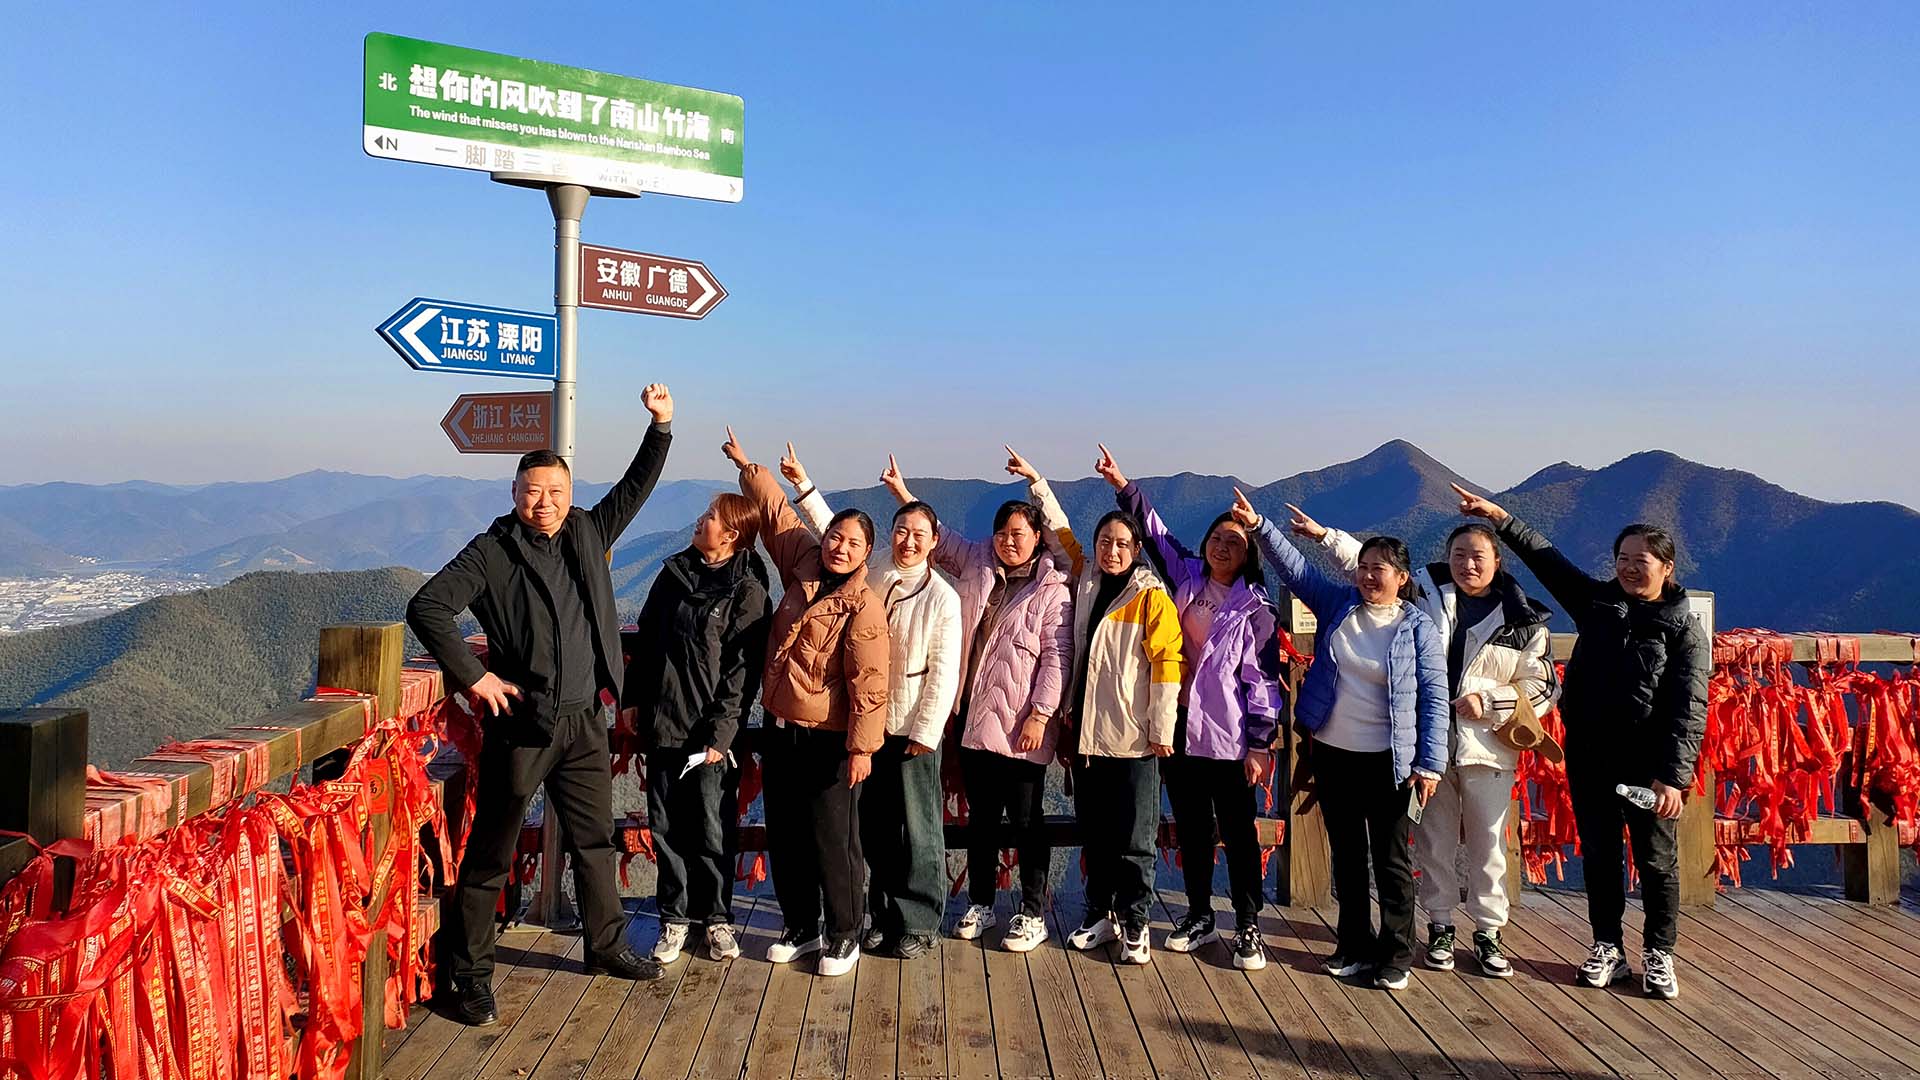 Hoch hinaus ging es bei unseren Kollegen in China, die den Bamboo-Mountain besuchten.